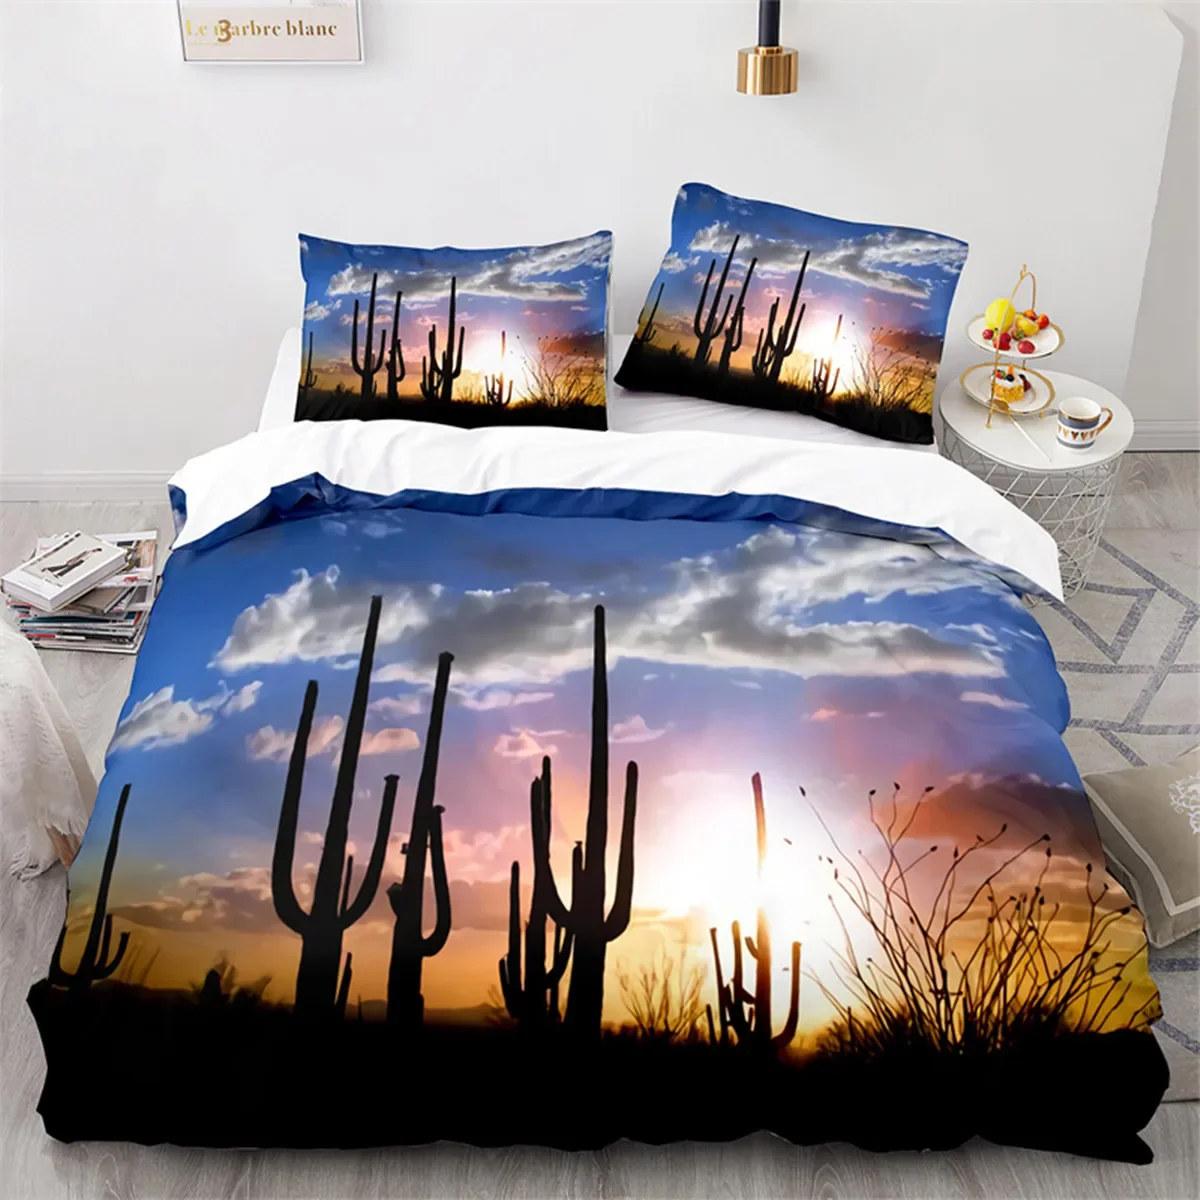 

Cactus Duvet Cover Tropical Desert Plant Mountain Sunrise Microfiber Quilt Cover for Children Teens for Bedroom Decoration King